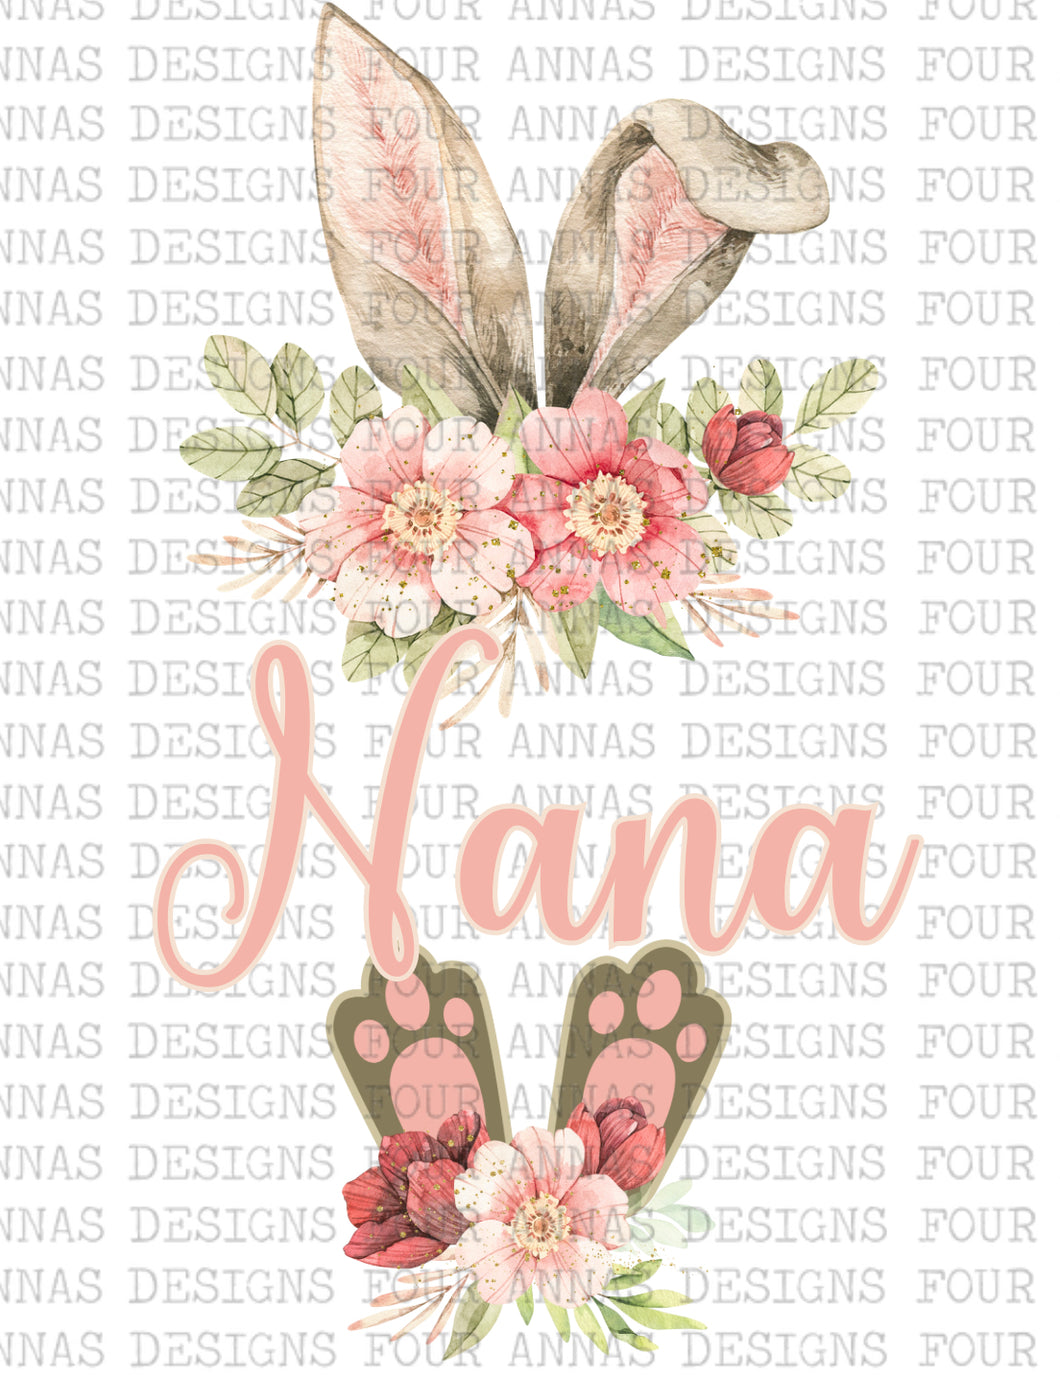 Nana bunny